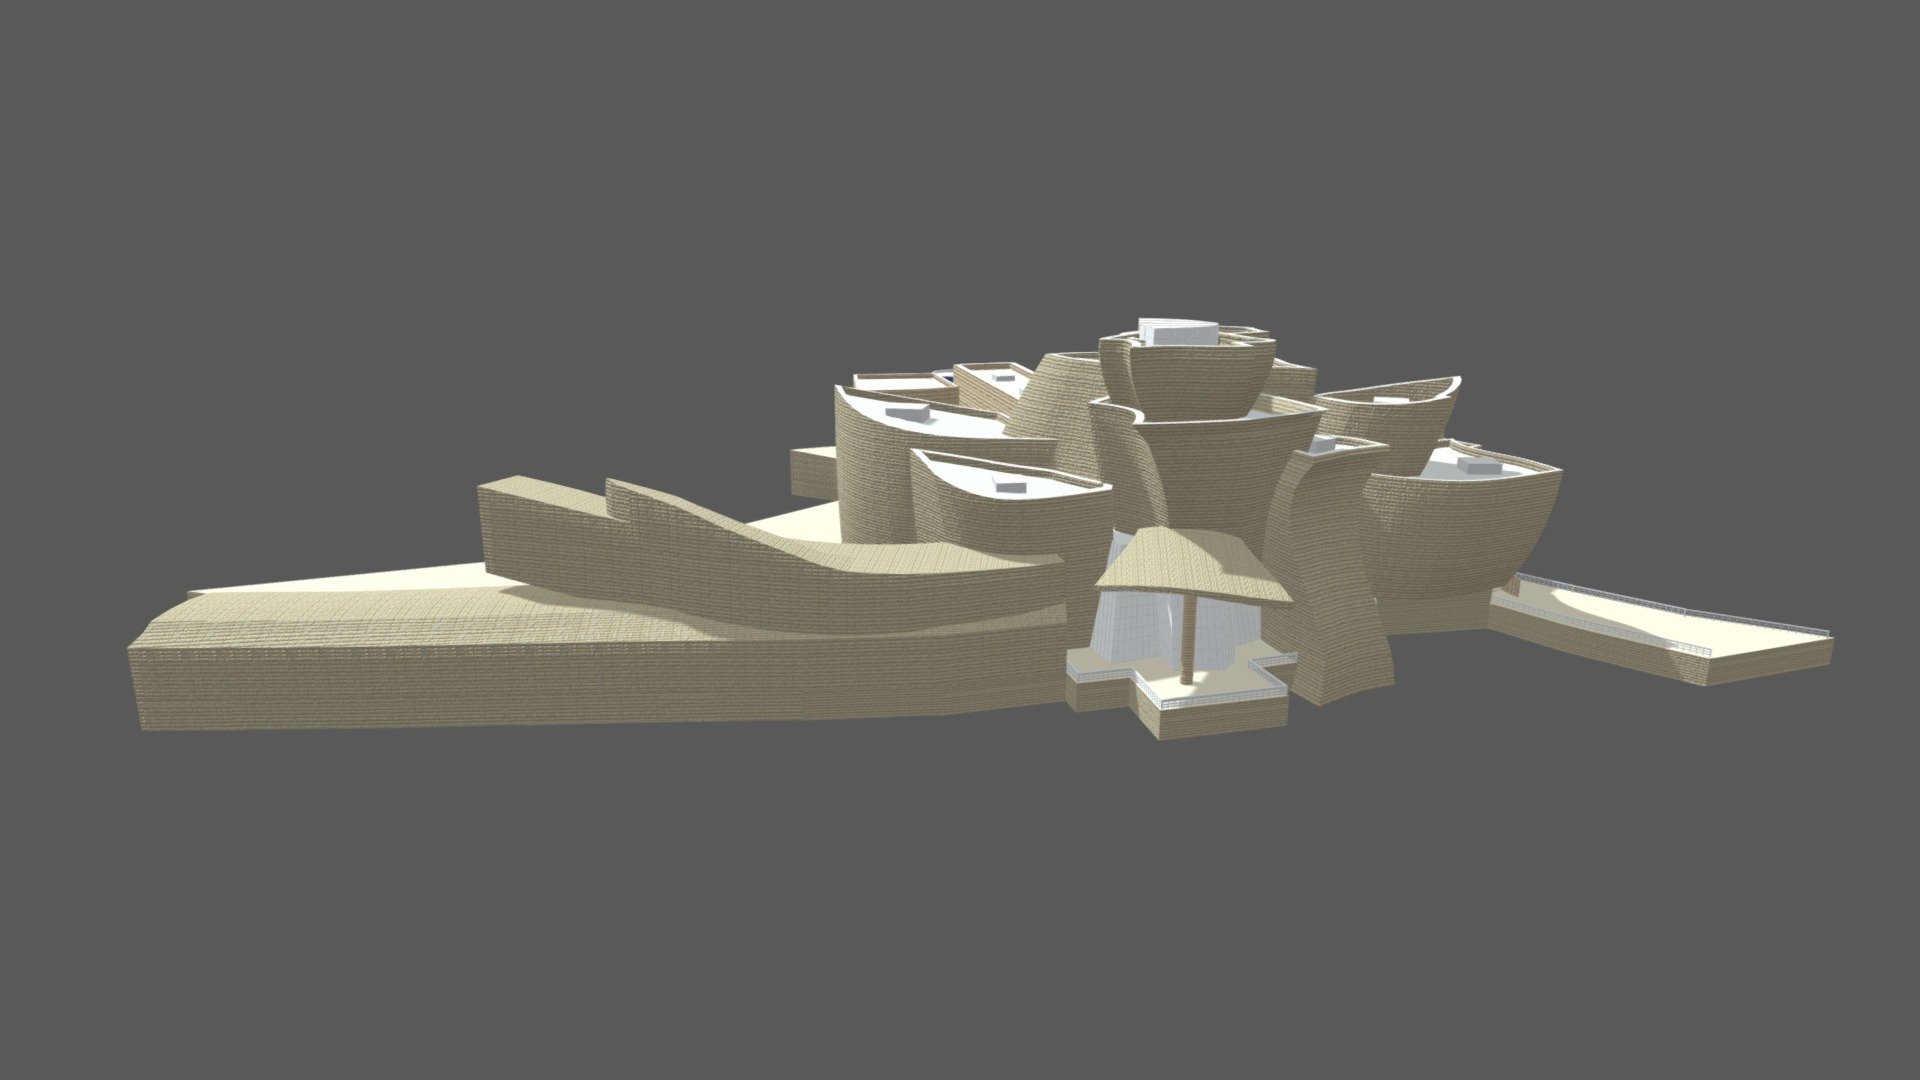 Guggenheim Museum Bilbao - 3D model by nuralam018 (@nuralam018 